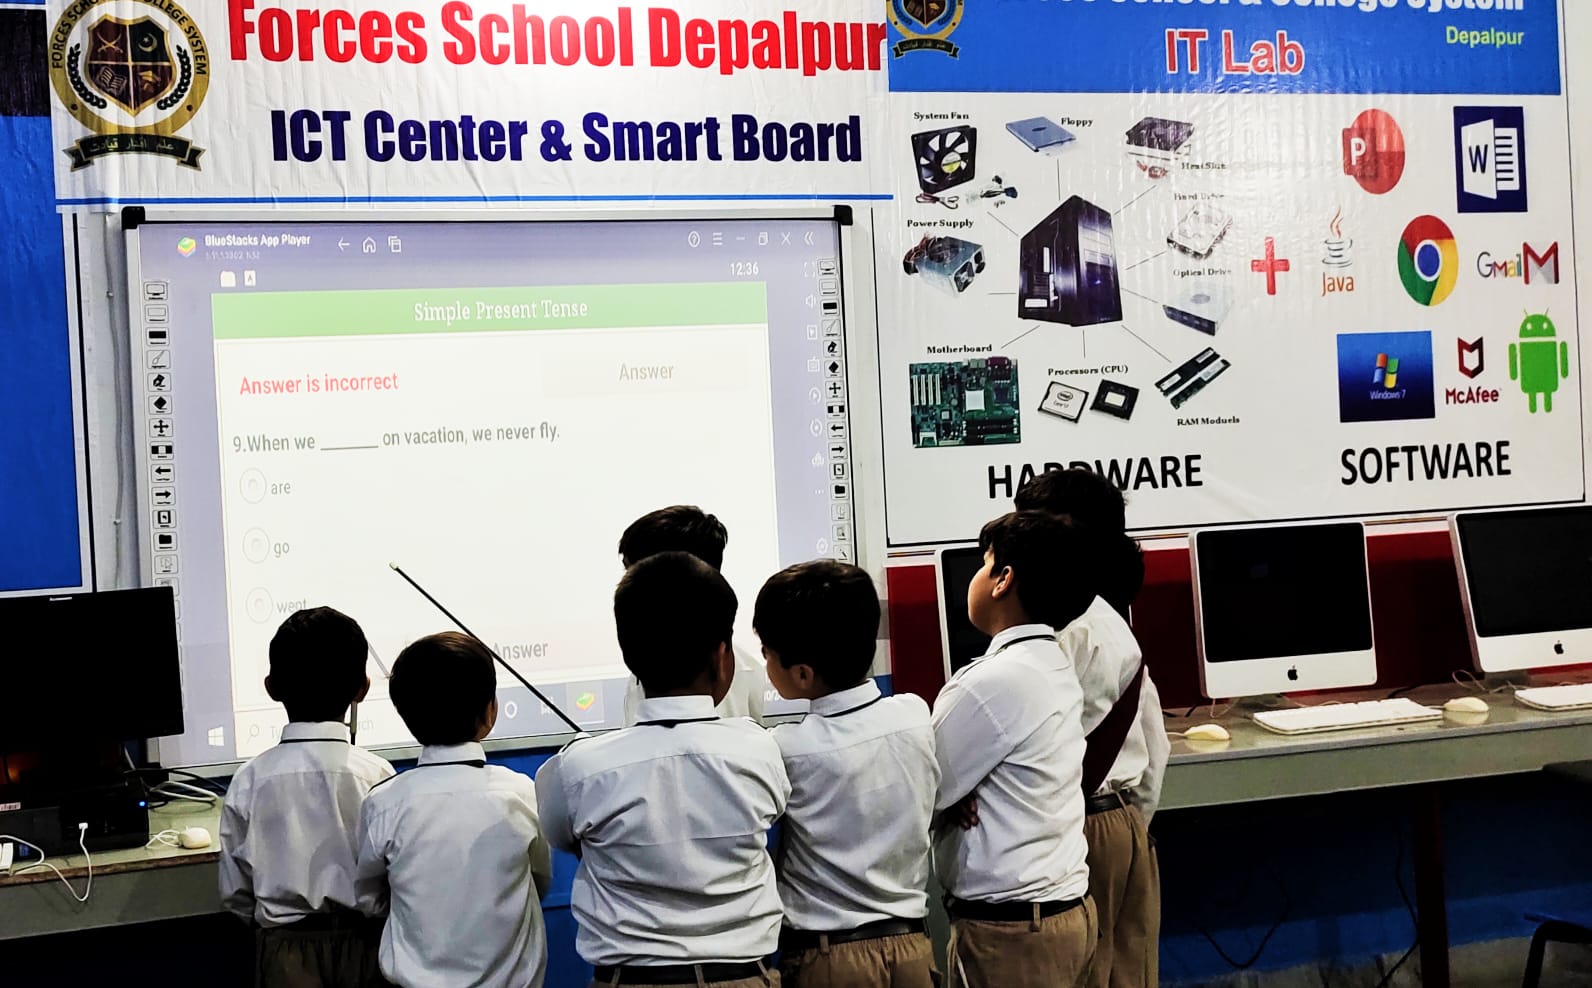 Smart Board Activity at Forces School Fazaia Campus, Depalpur